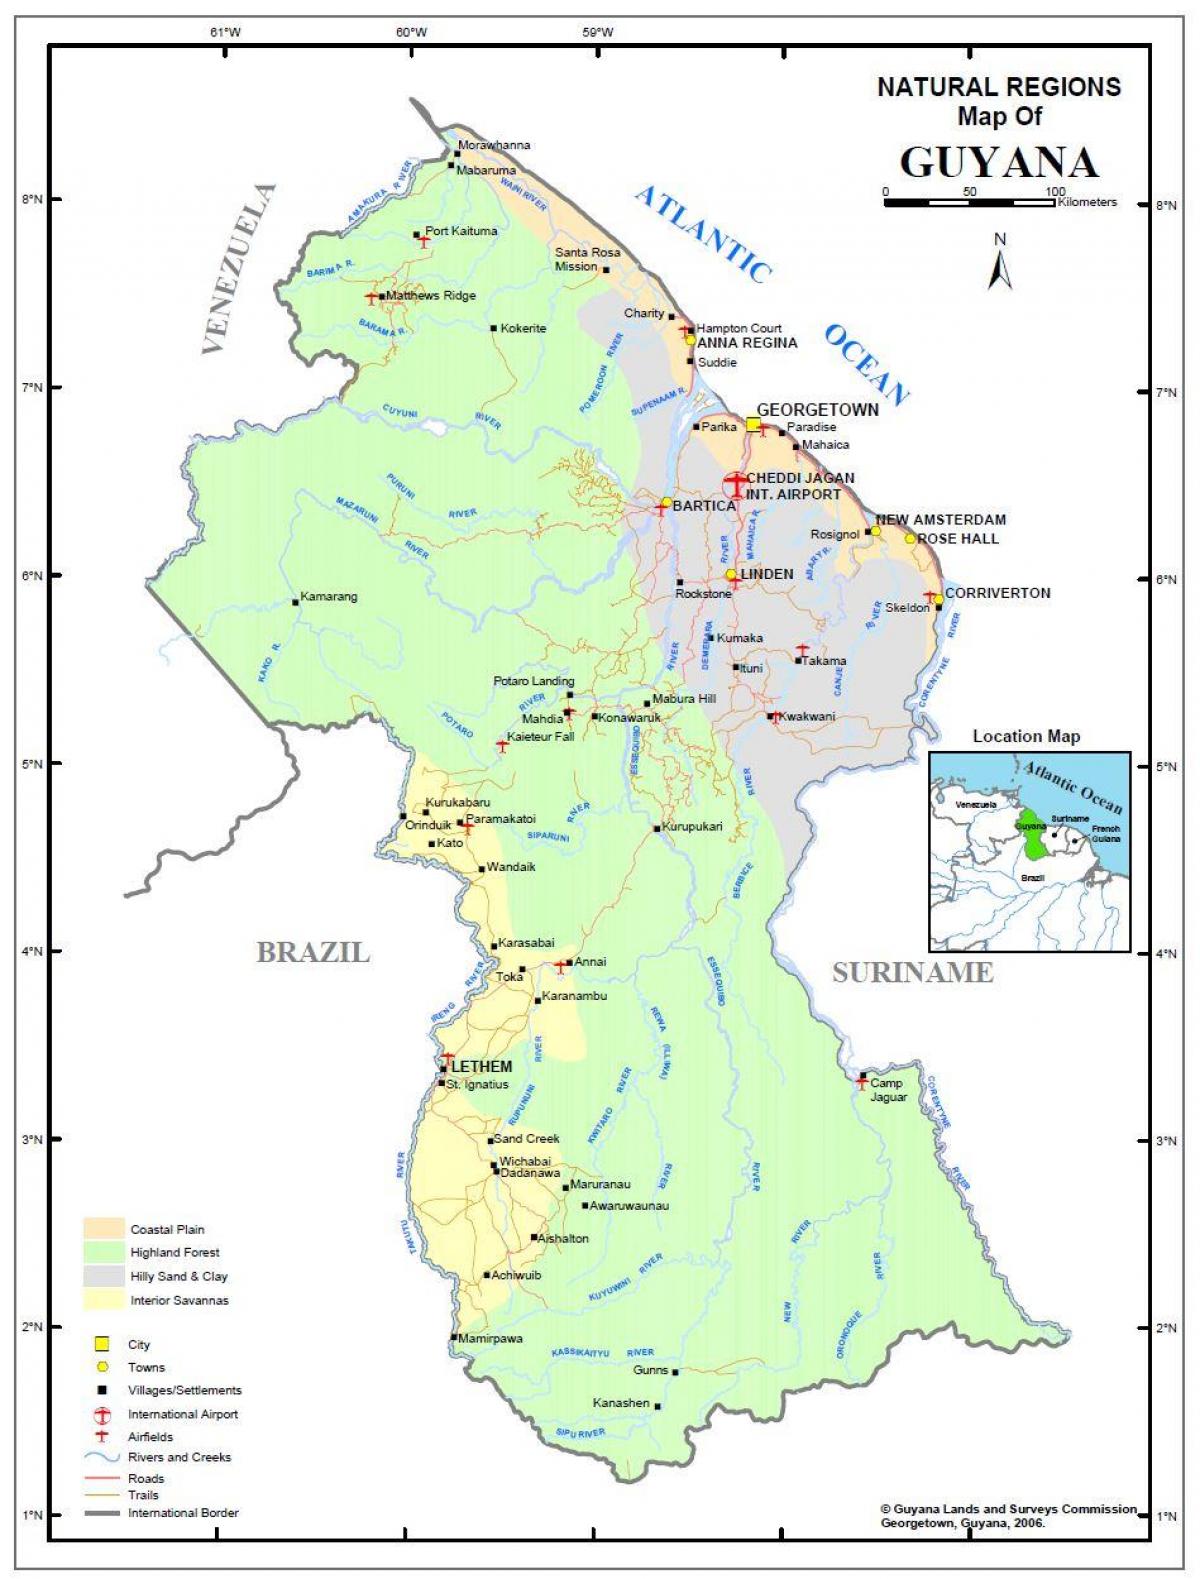 χάρτης της Γουιάνας δείχνει φυσικών πόρων